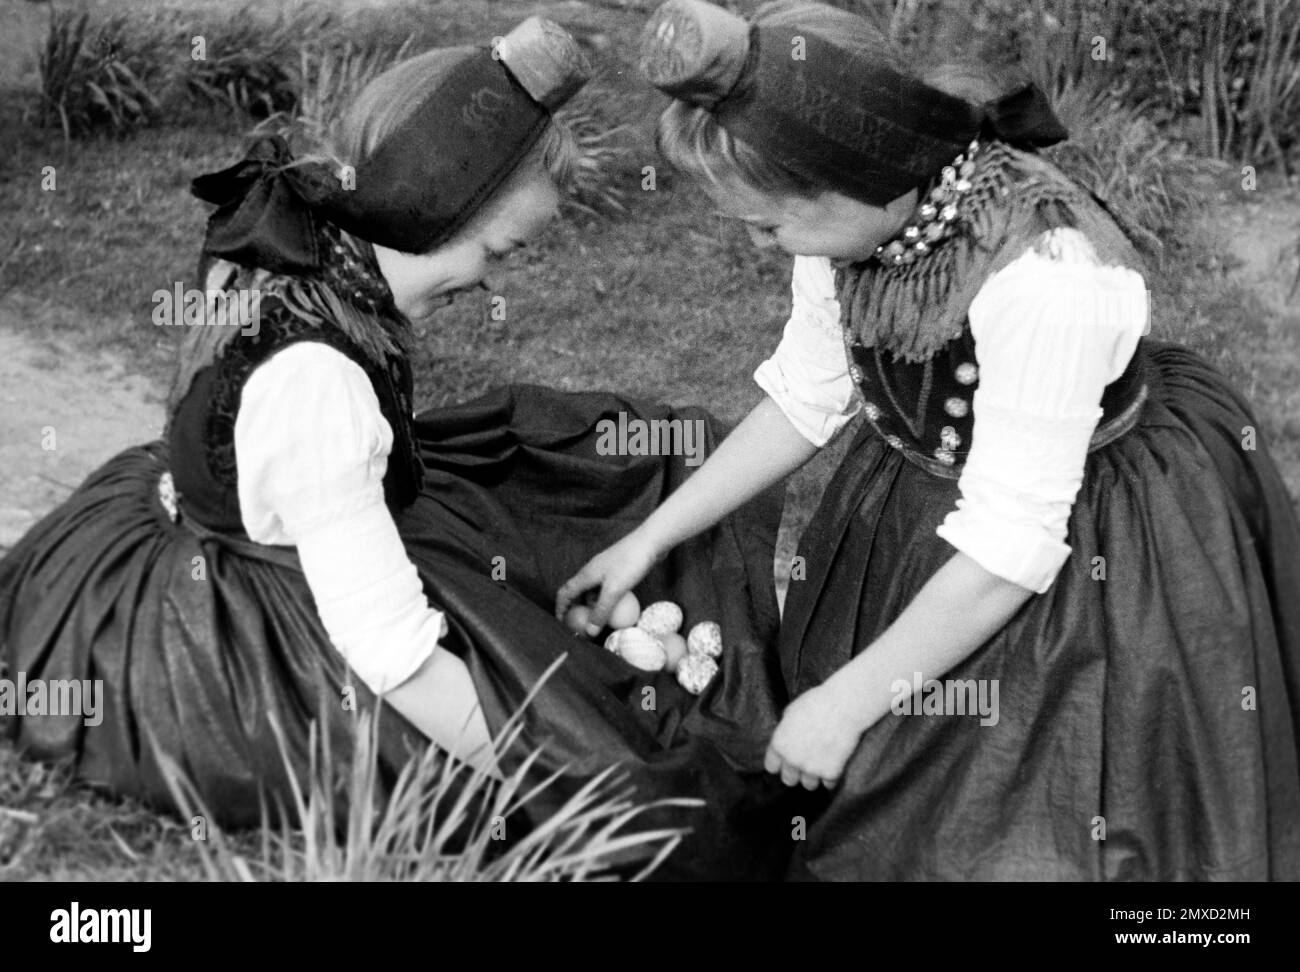 Zusammentragen der gefundenen Ostereier, Schwalm-Eder-Kreis in Hessen, 1938. Collecting the Easter eggs found, Schwalm-Eder region in Hesse, 1938. Stock Photo